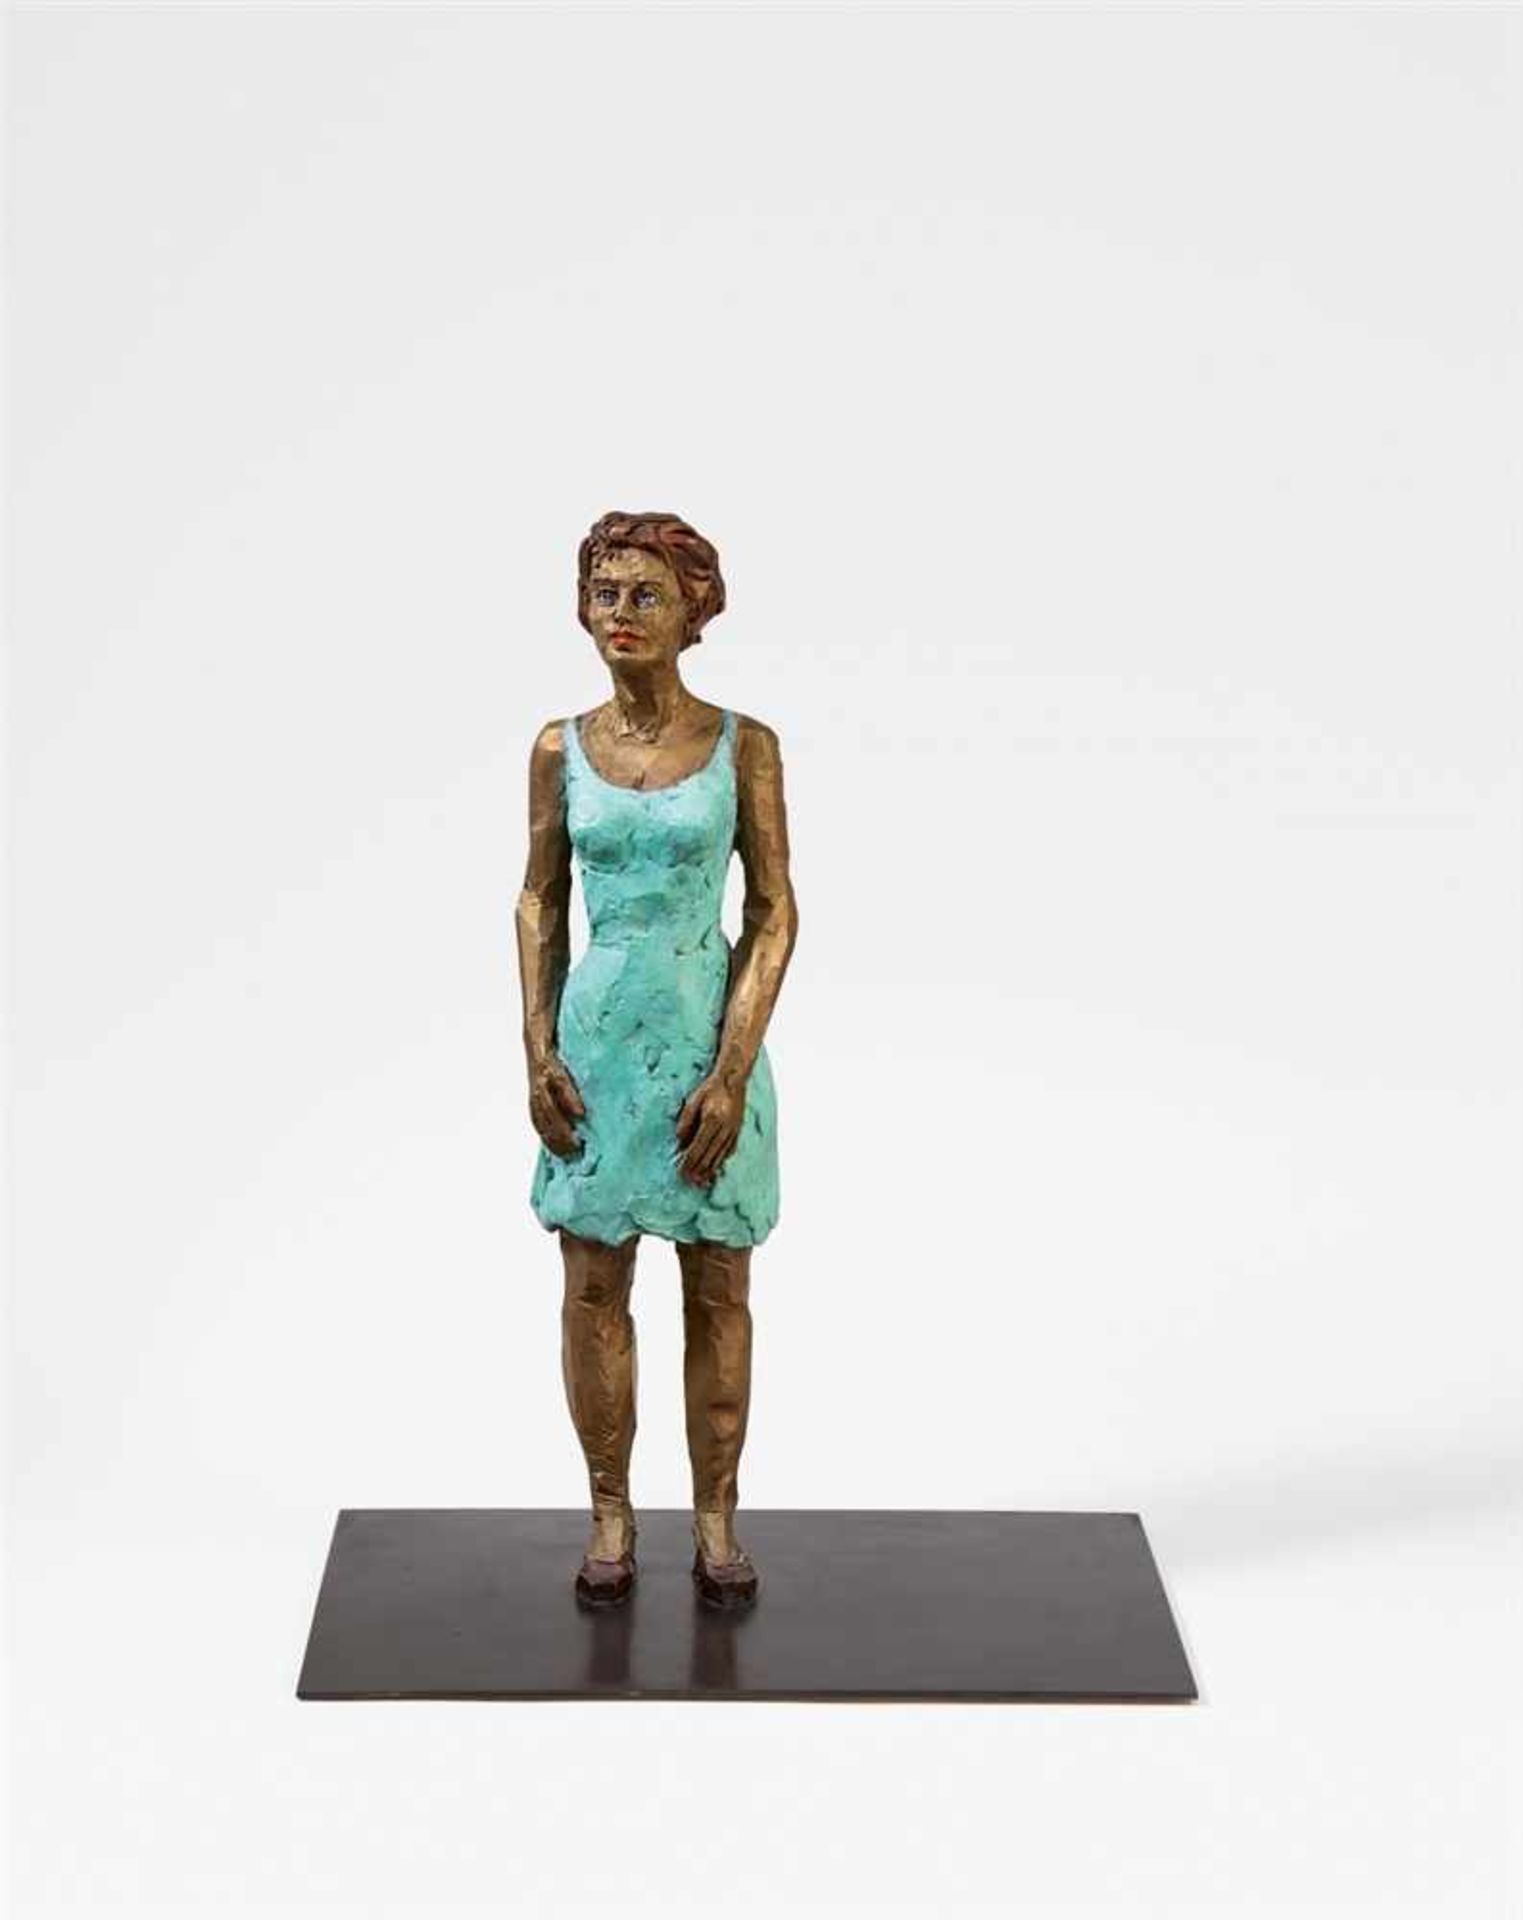 Stephan BalkenholFrau Bronze, patiniert und farbig gefasst. 56 x 14,5 x 12 cm. Auf Metallplinthe 0,5